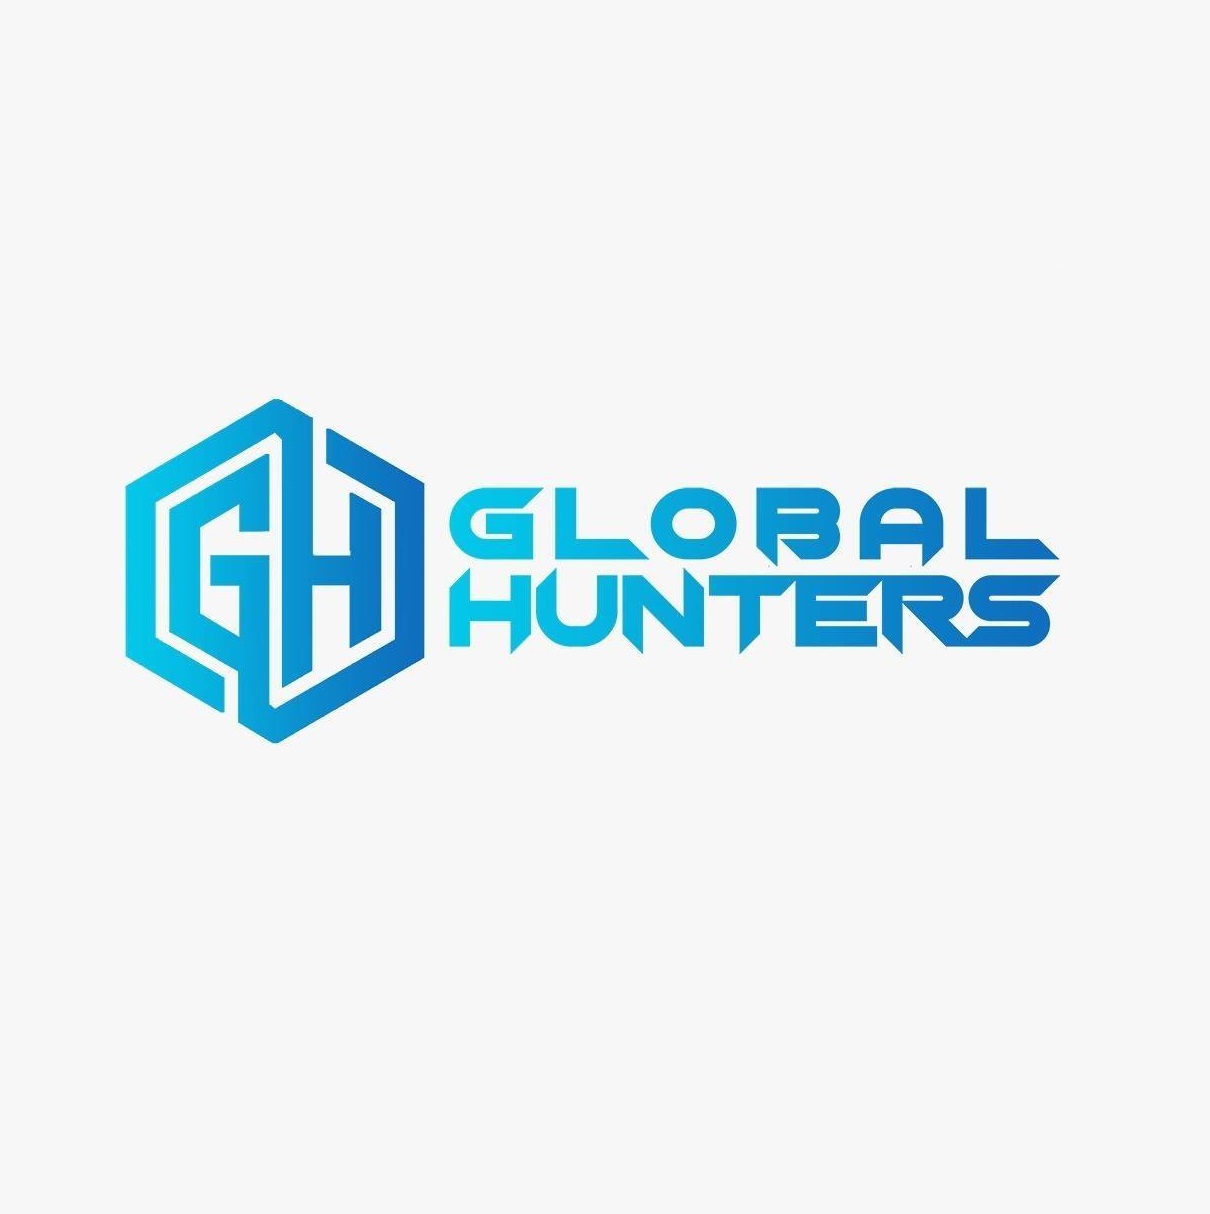 Global Hunters